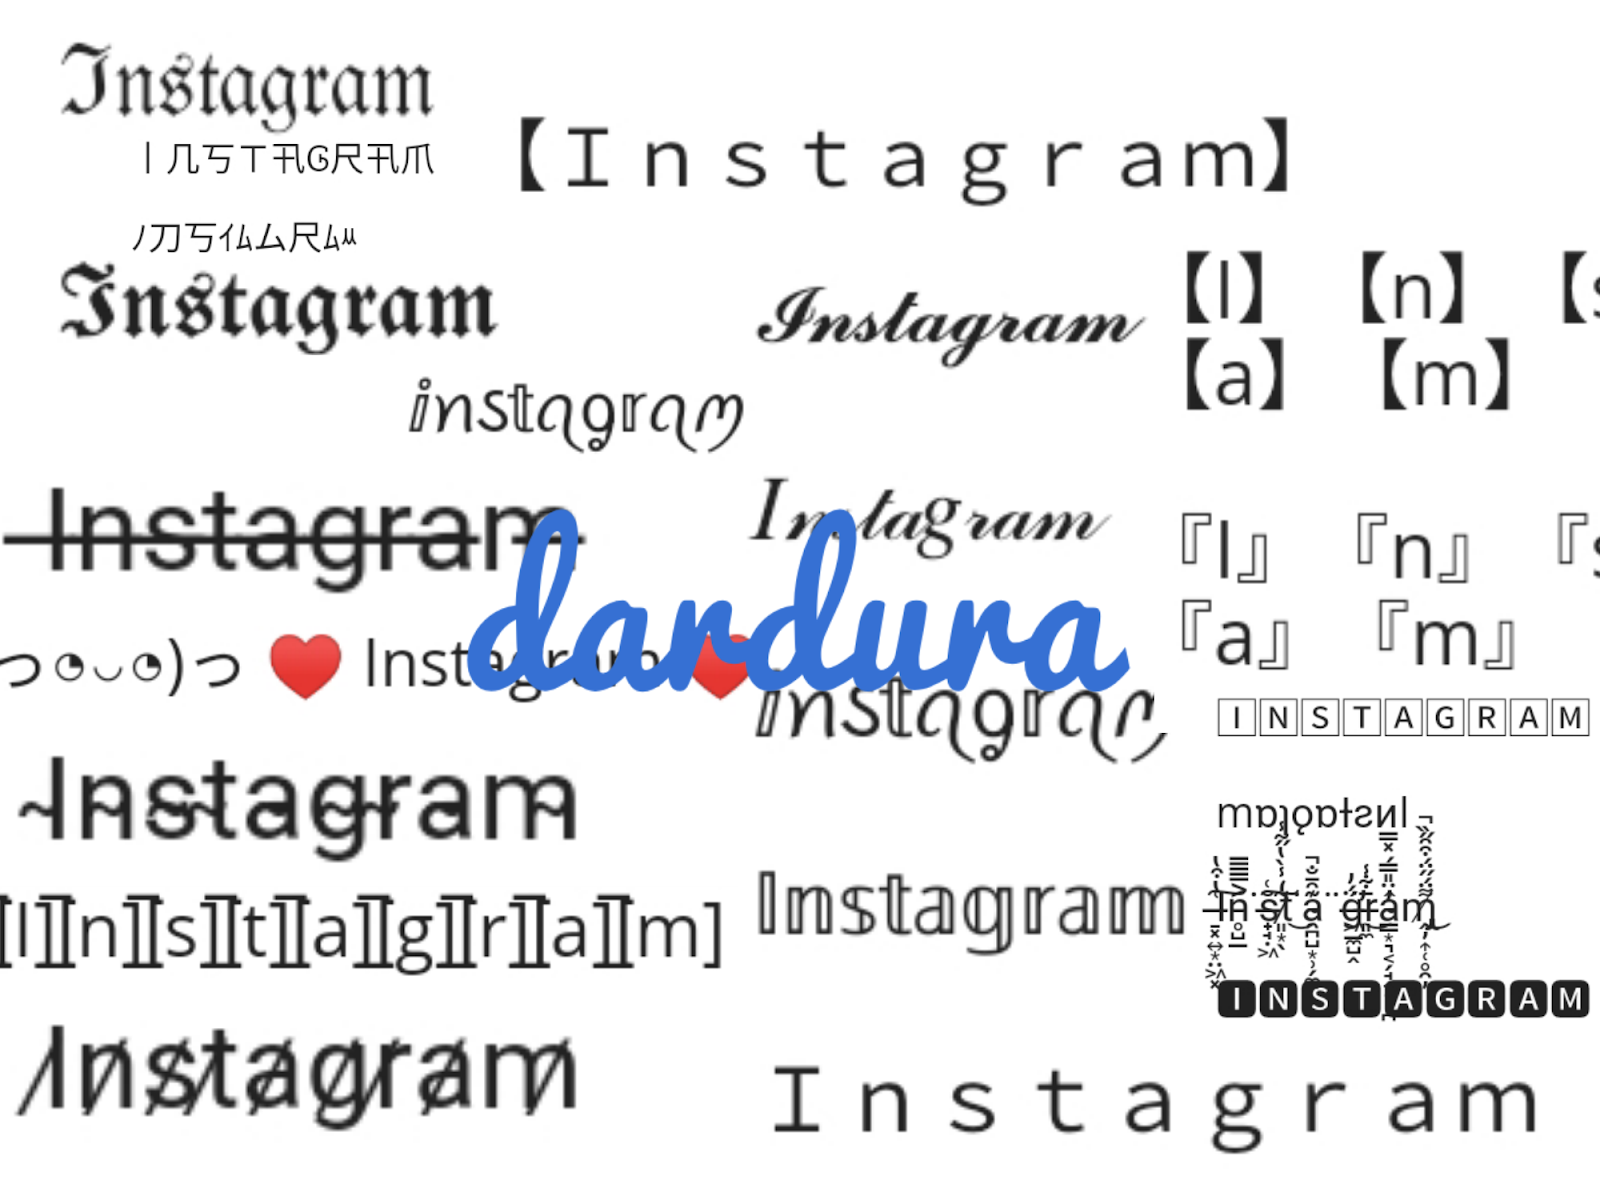 Font IG generator: Với Font IG generator, bạn có thể sáng tạo nhiều kiểu chữ thú vị, độc đáo và phù hợp với phong cách cá nhân trên trang Instagram của mình. Hãy khám phá ngay!